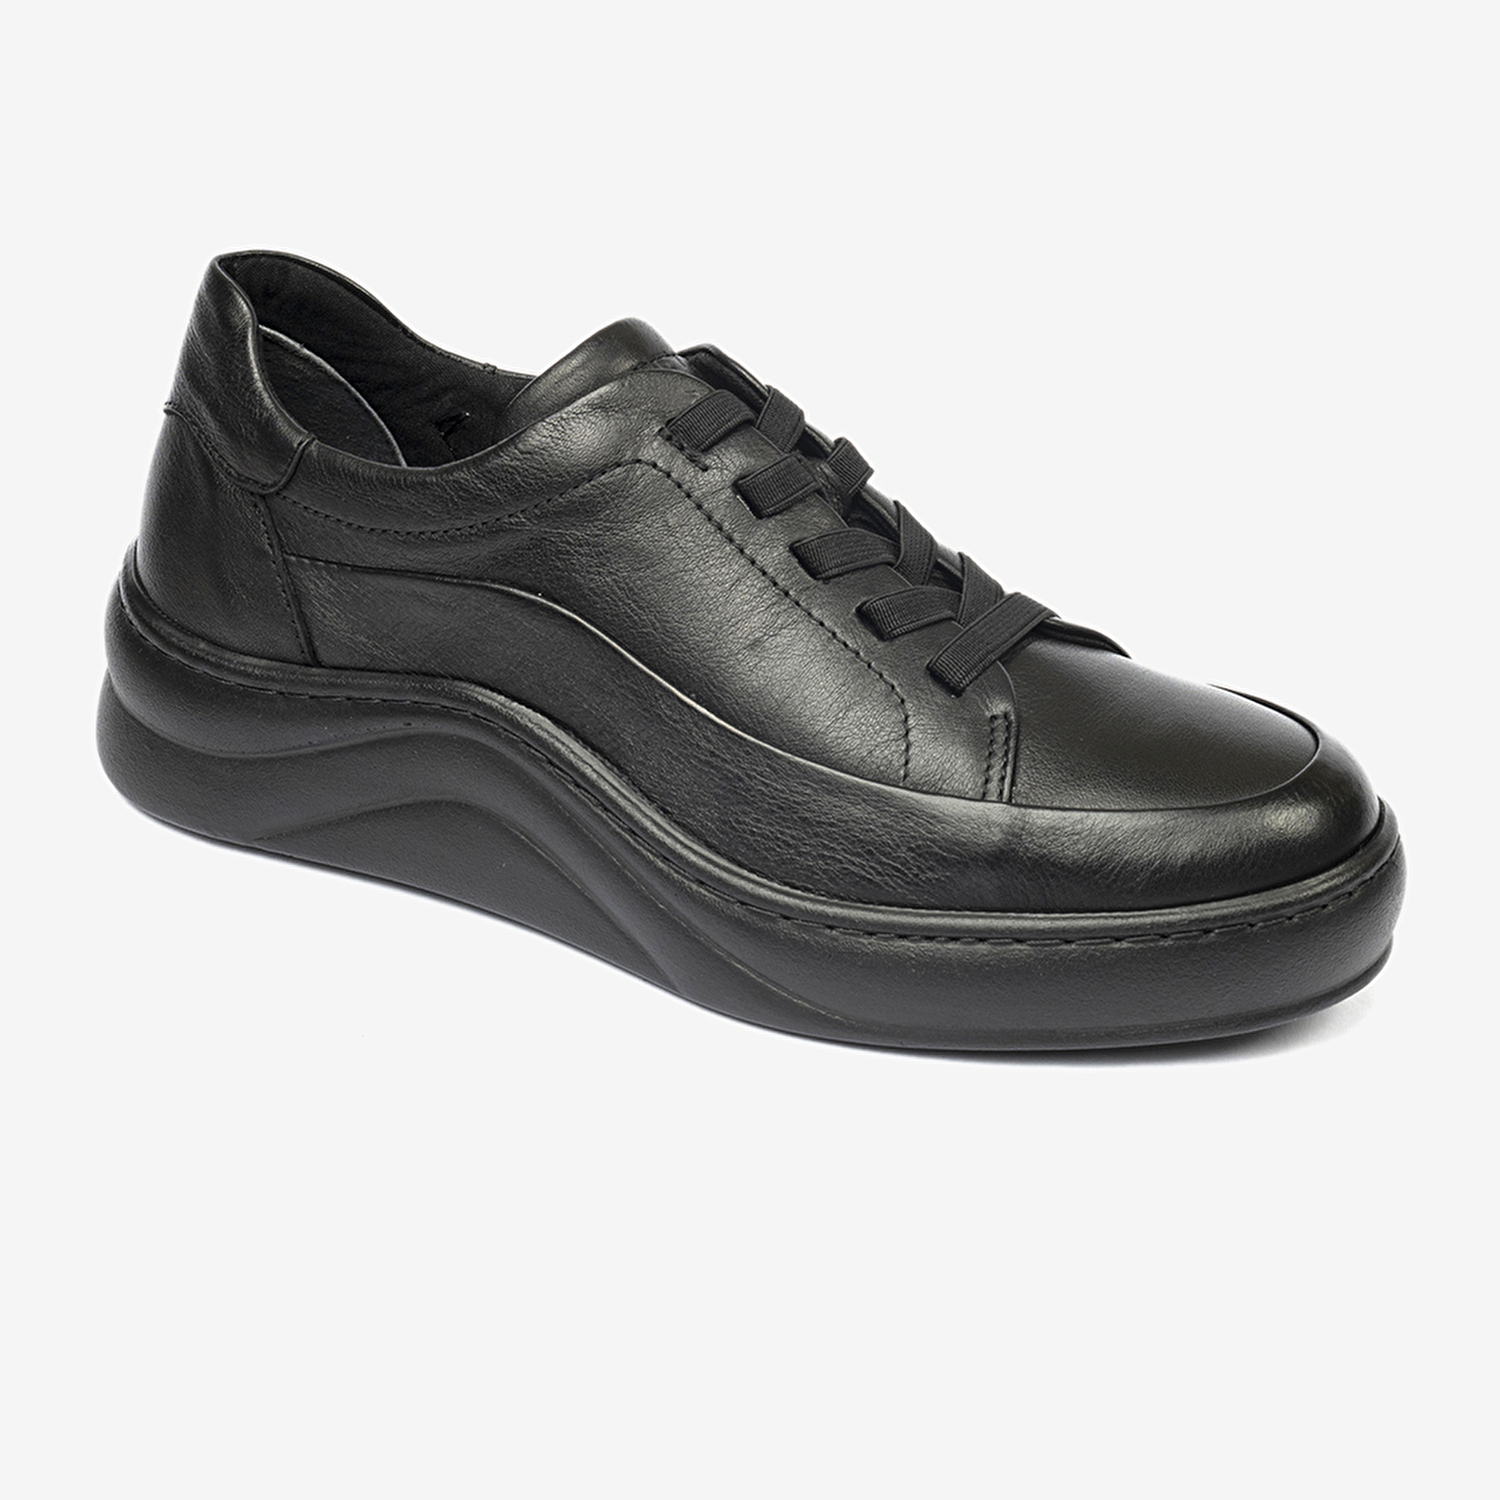 Kadın Siyah Hakiki Deri Sneaker Ayakkabı 4Y2FA59052-1